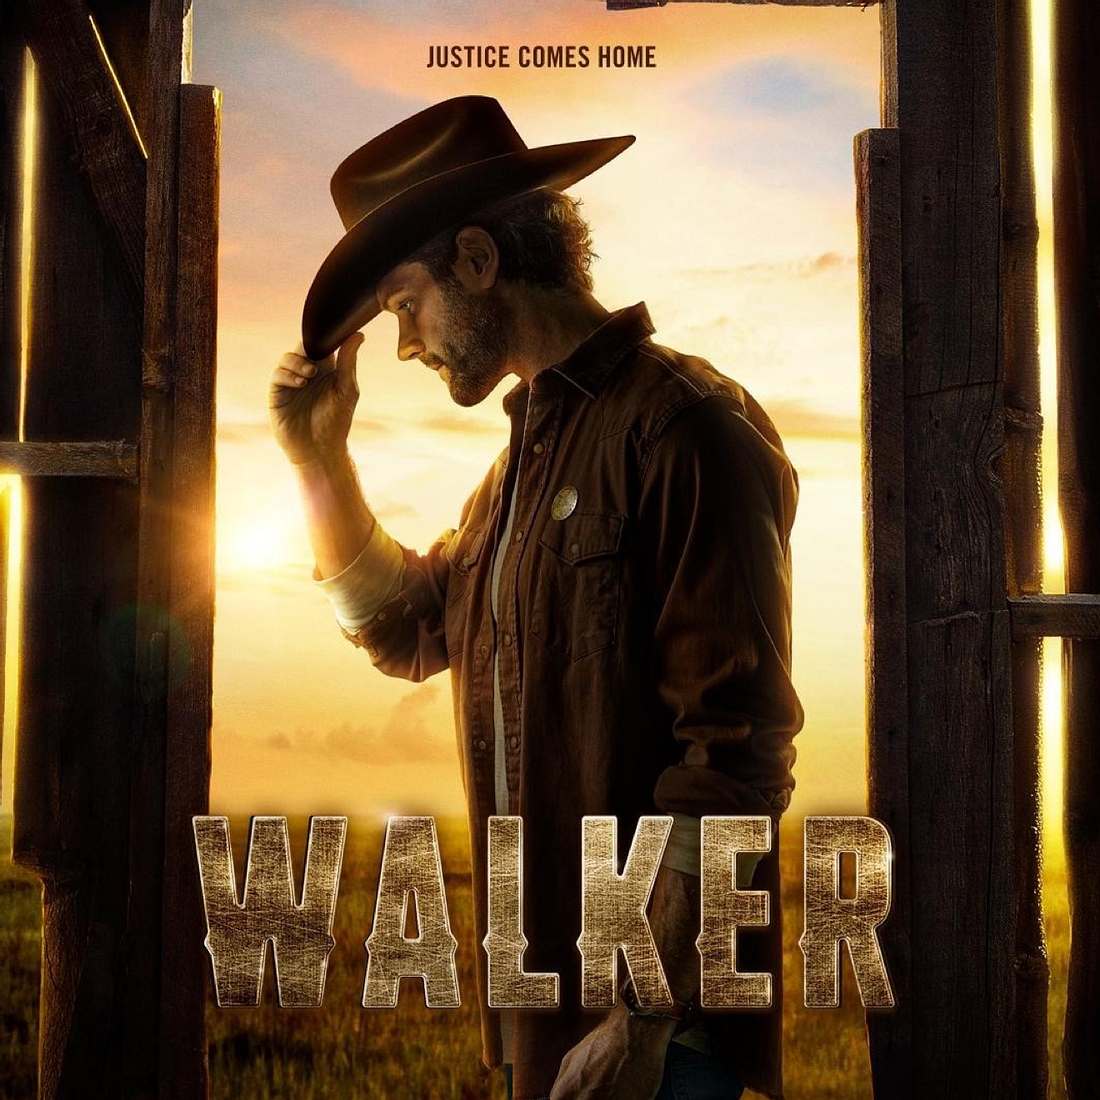 Besser als Chuck Norris? Supernatural-Star spielt Walker, Texas Ranger